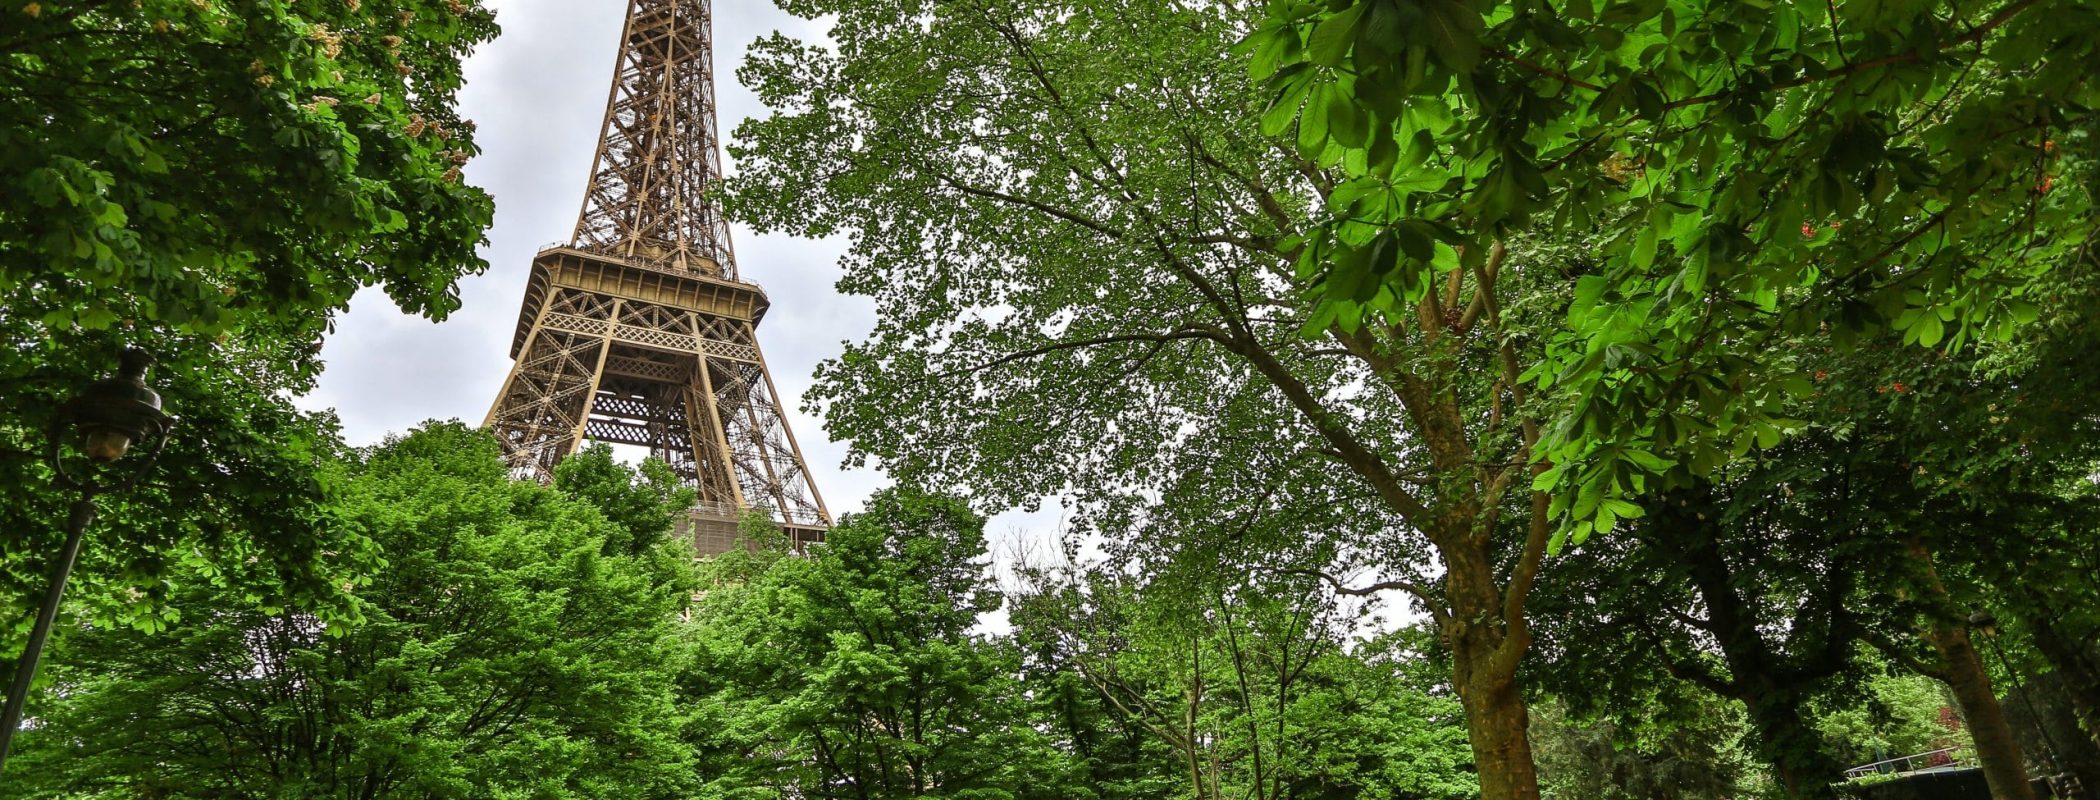 Protection des arbres - Groupe écologiste de Paris